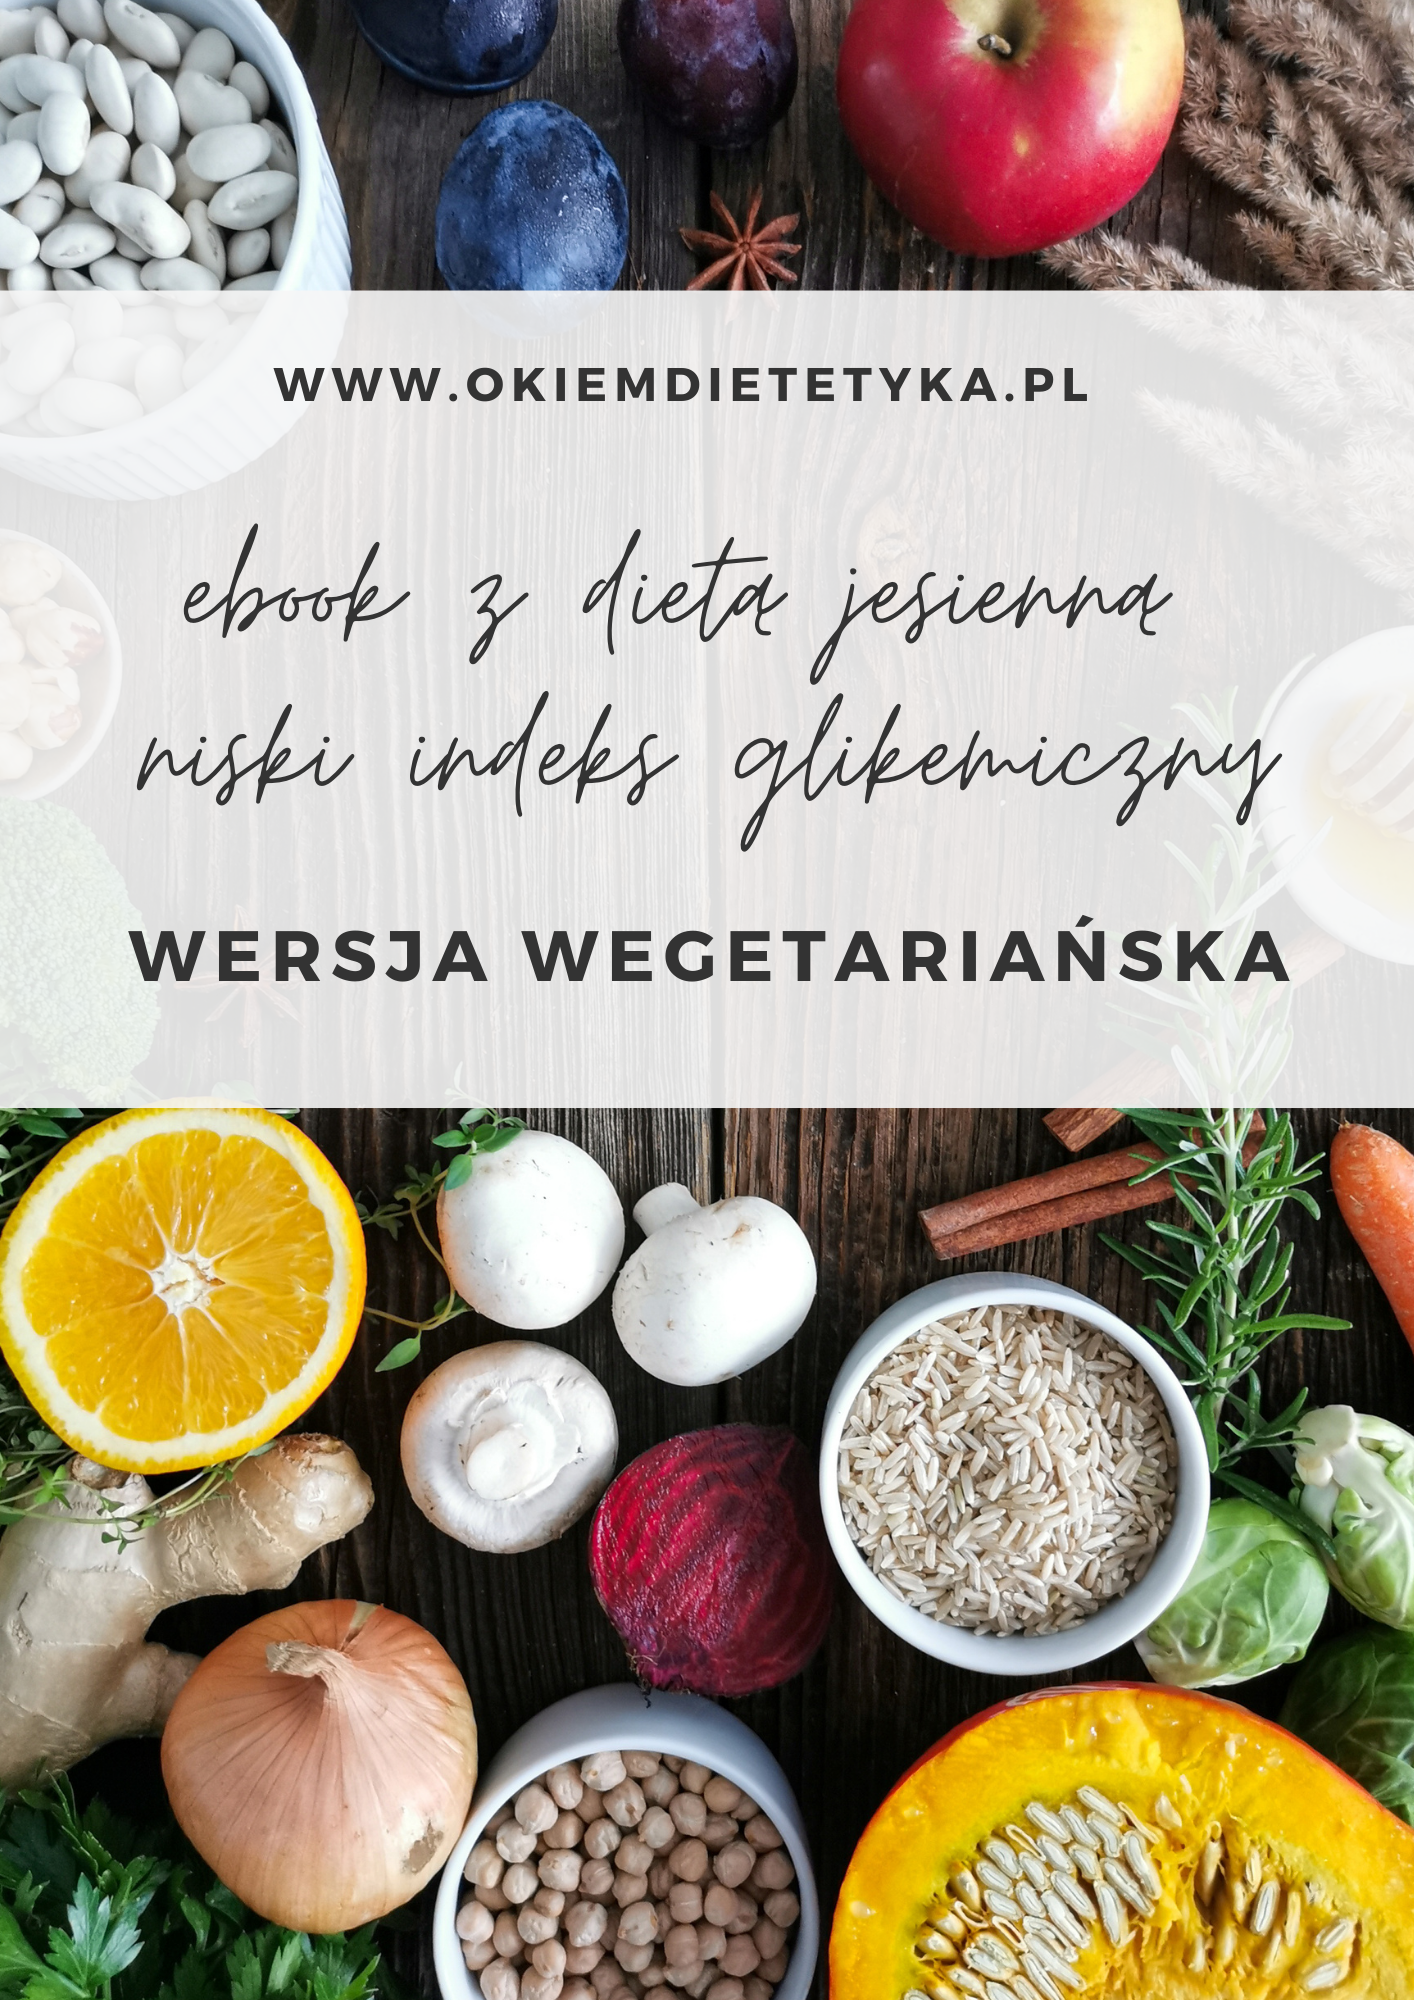 Jesienny ebook z dietą ’21 – wersja wegetariańska